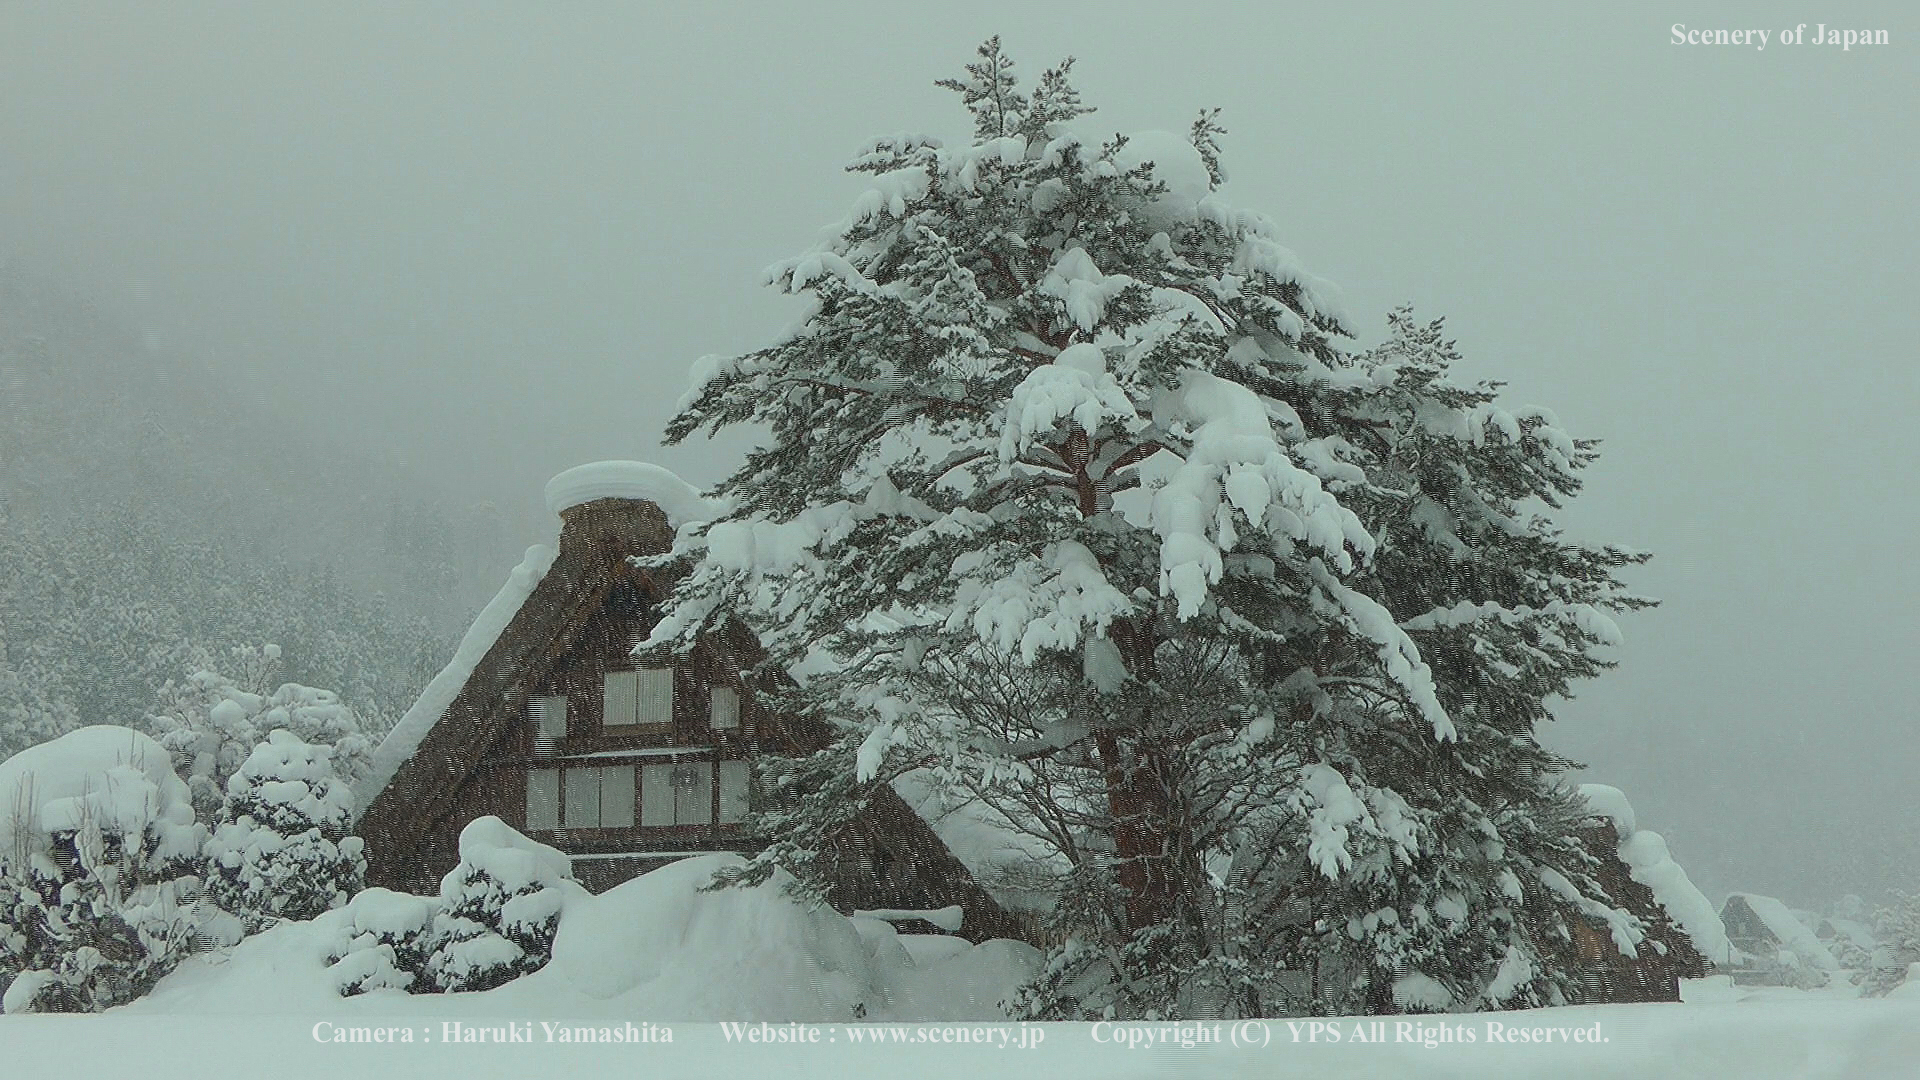 冬の壁紙 画像 無料ダウンロード Scenery Of Japan